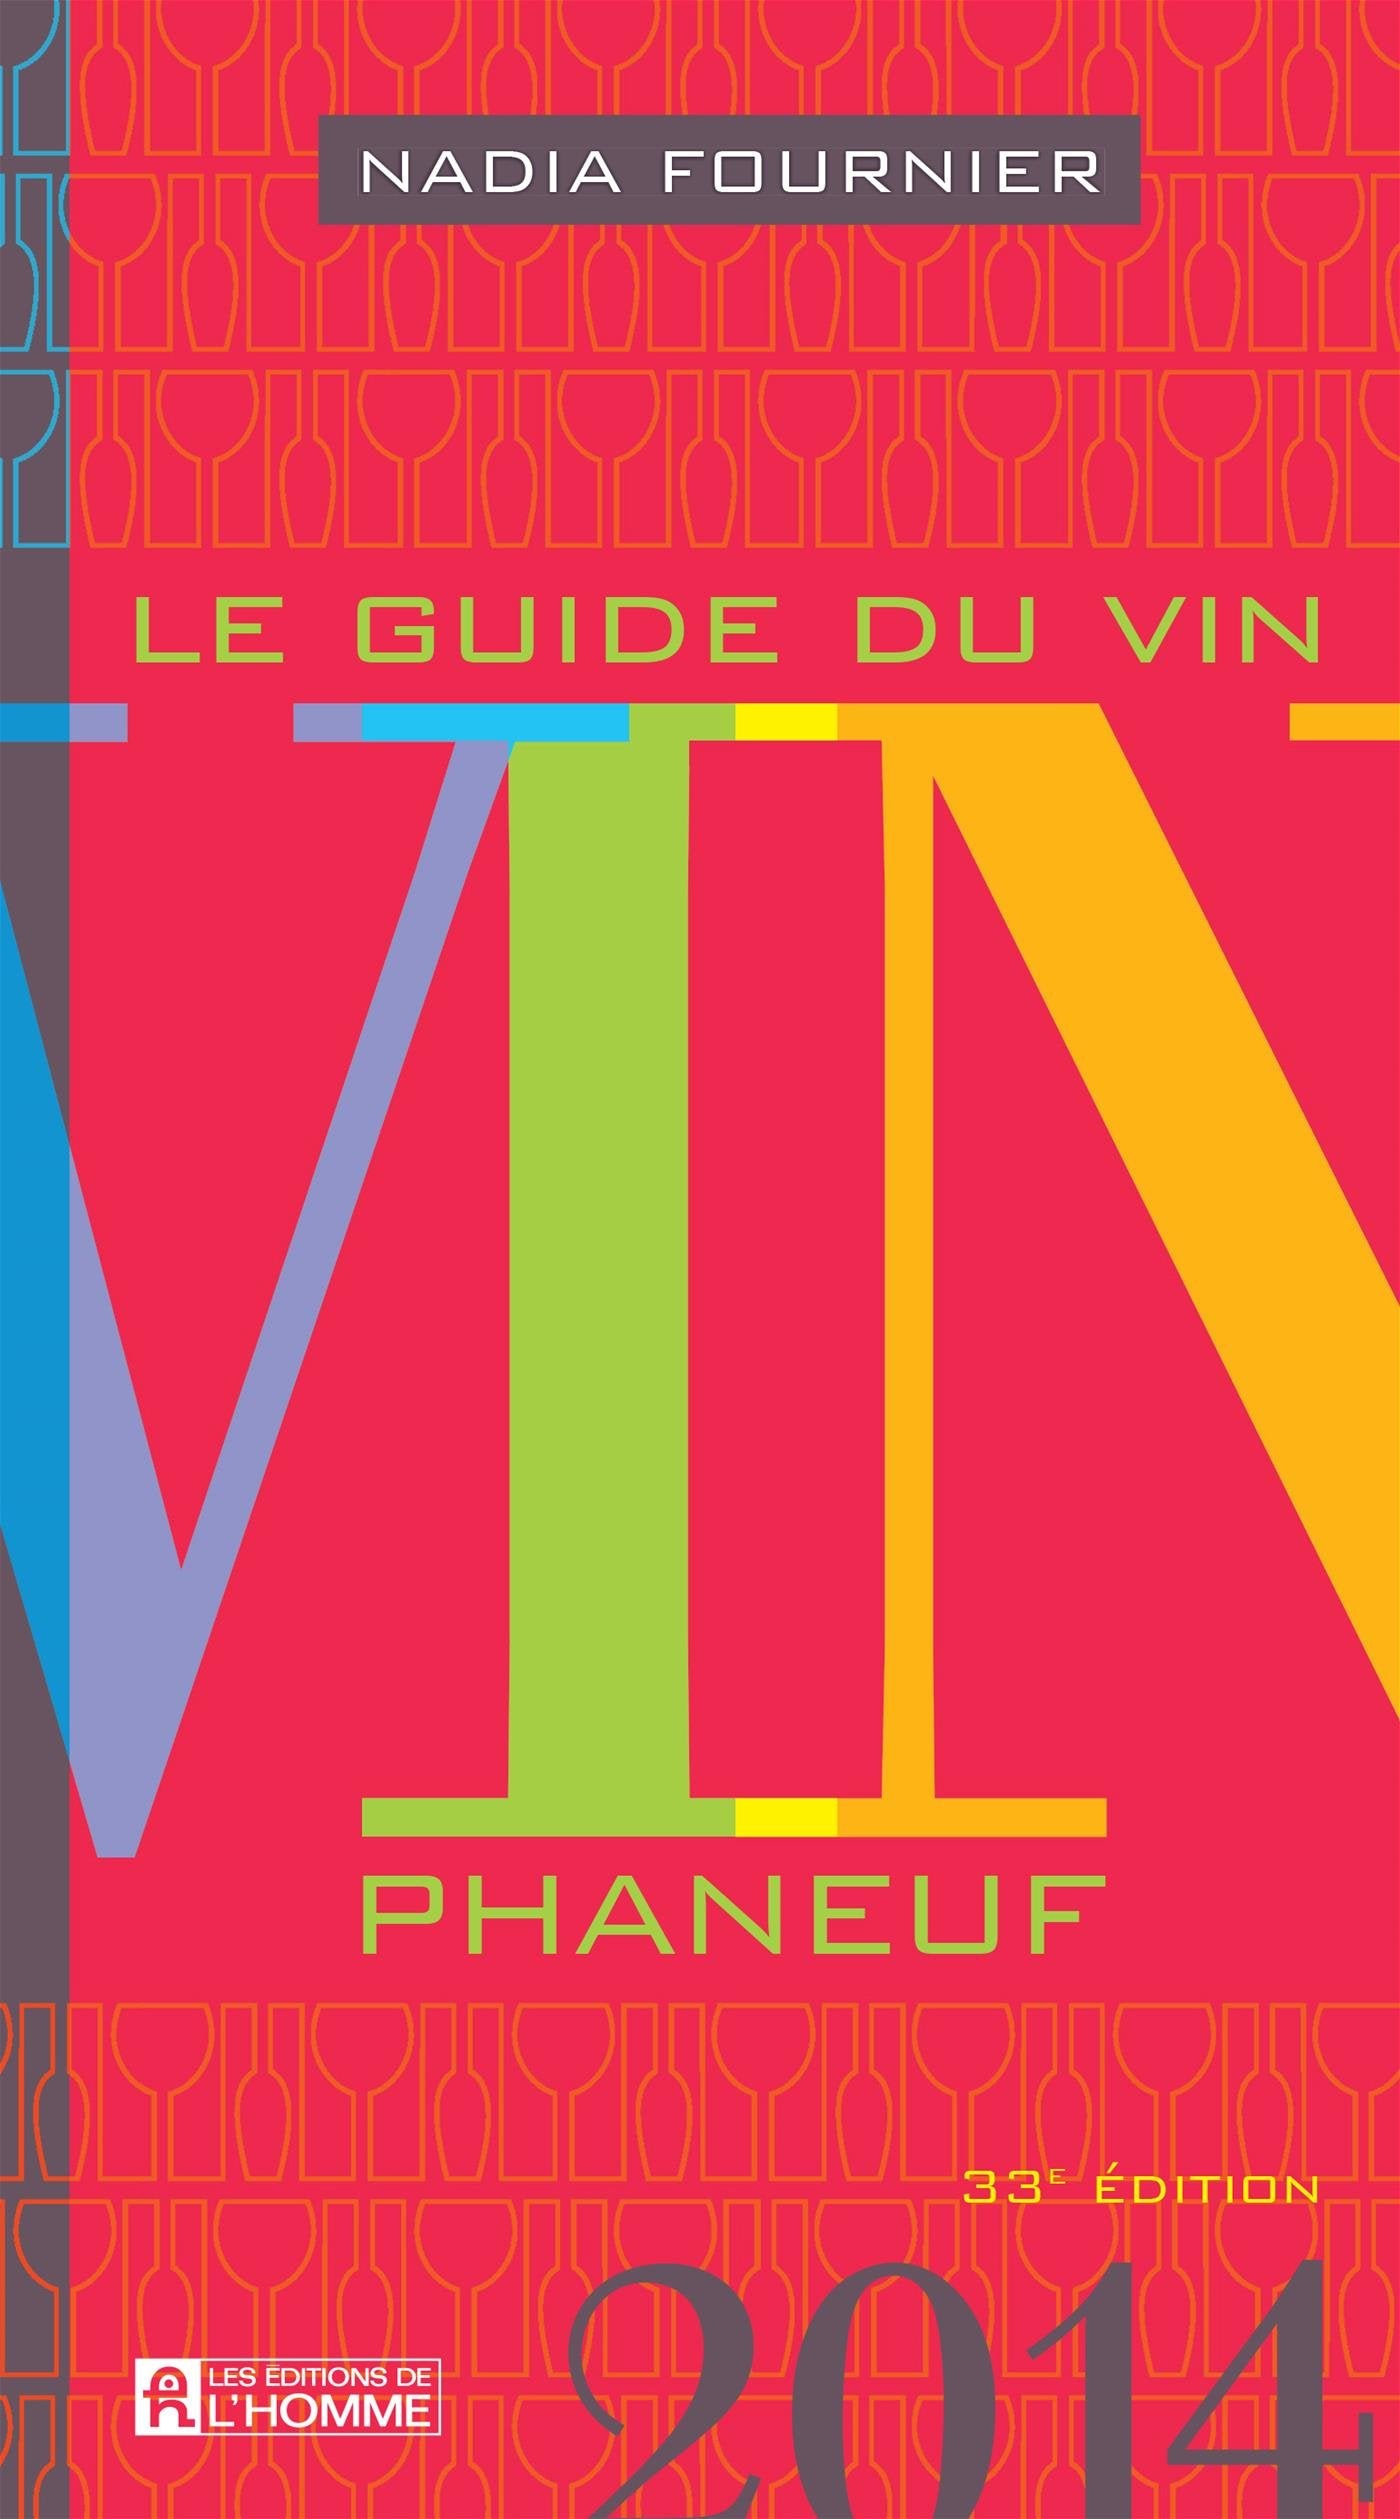 Livre ISBN 2761936965 Le guide du vin Phaneuf : Le guide du vin Phaneuf 2014 (Nadia Fournier)